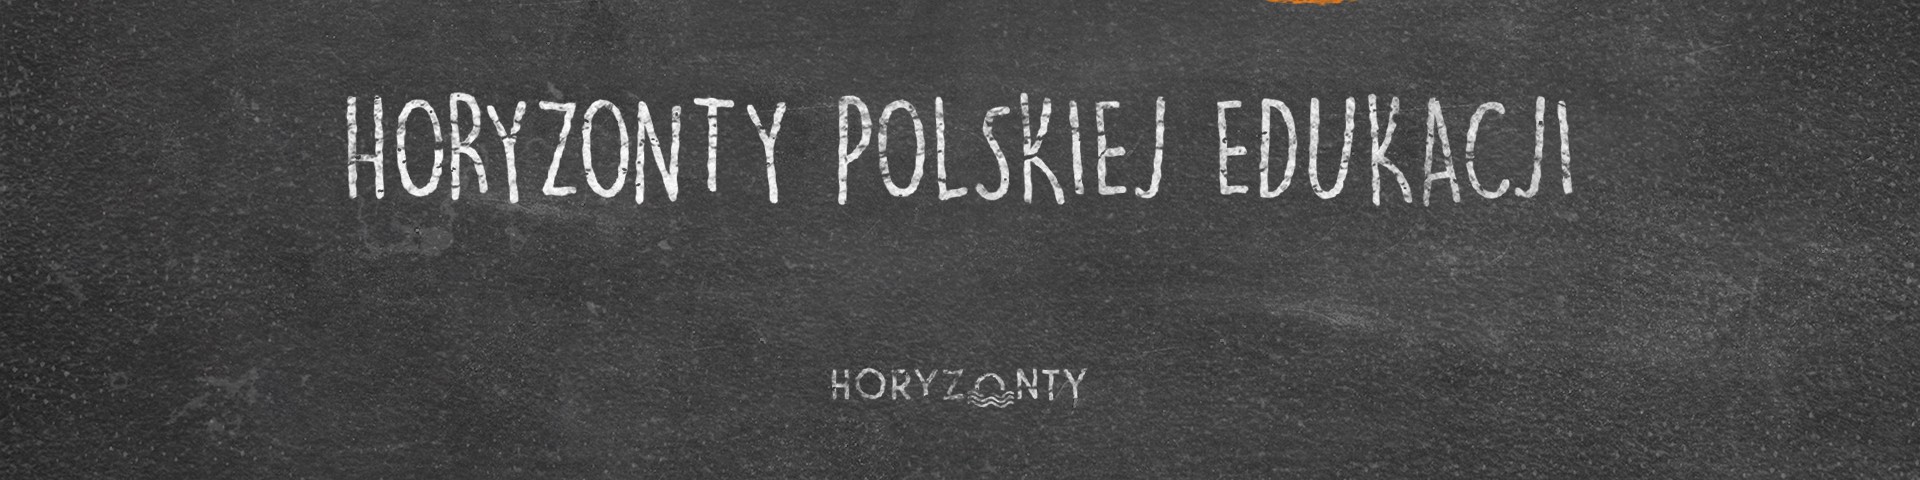 Horyzonty polskiej edukacji – kaganek oświaty